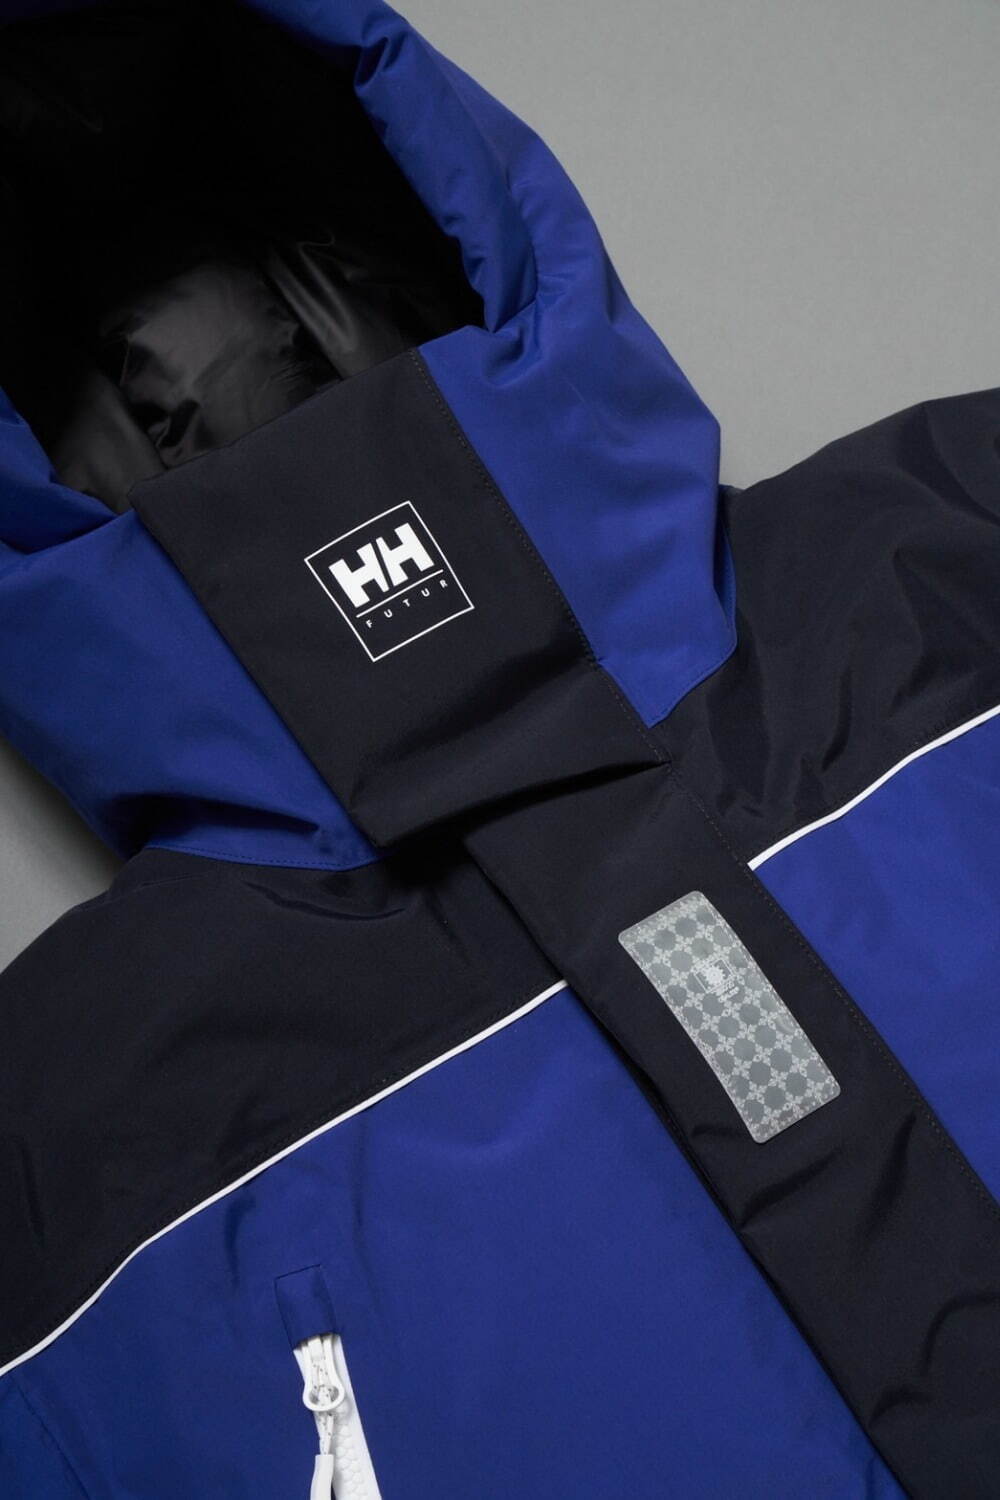 ヘリーハンセン×フューチャー オーシャンバルドールインサレーションジャケット (HH×FUTUR Ocean Balder Insulation Jacket) 88,000円 メールブルー